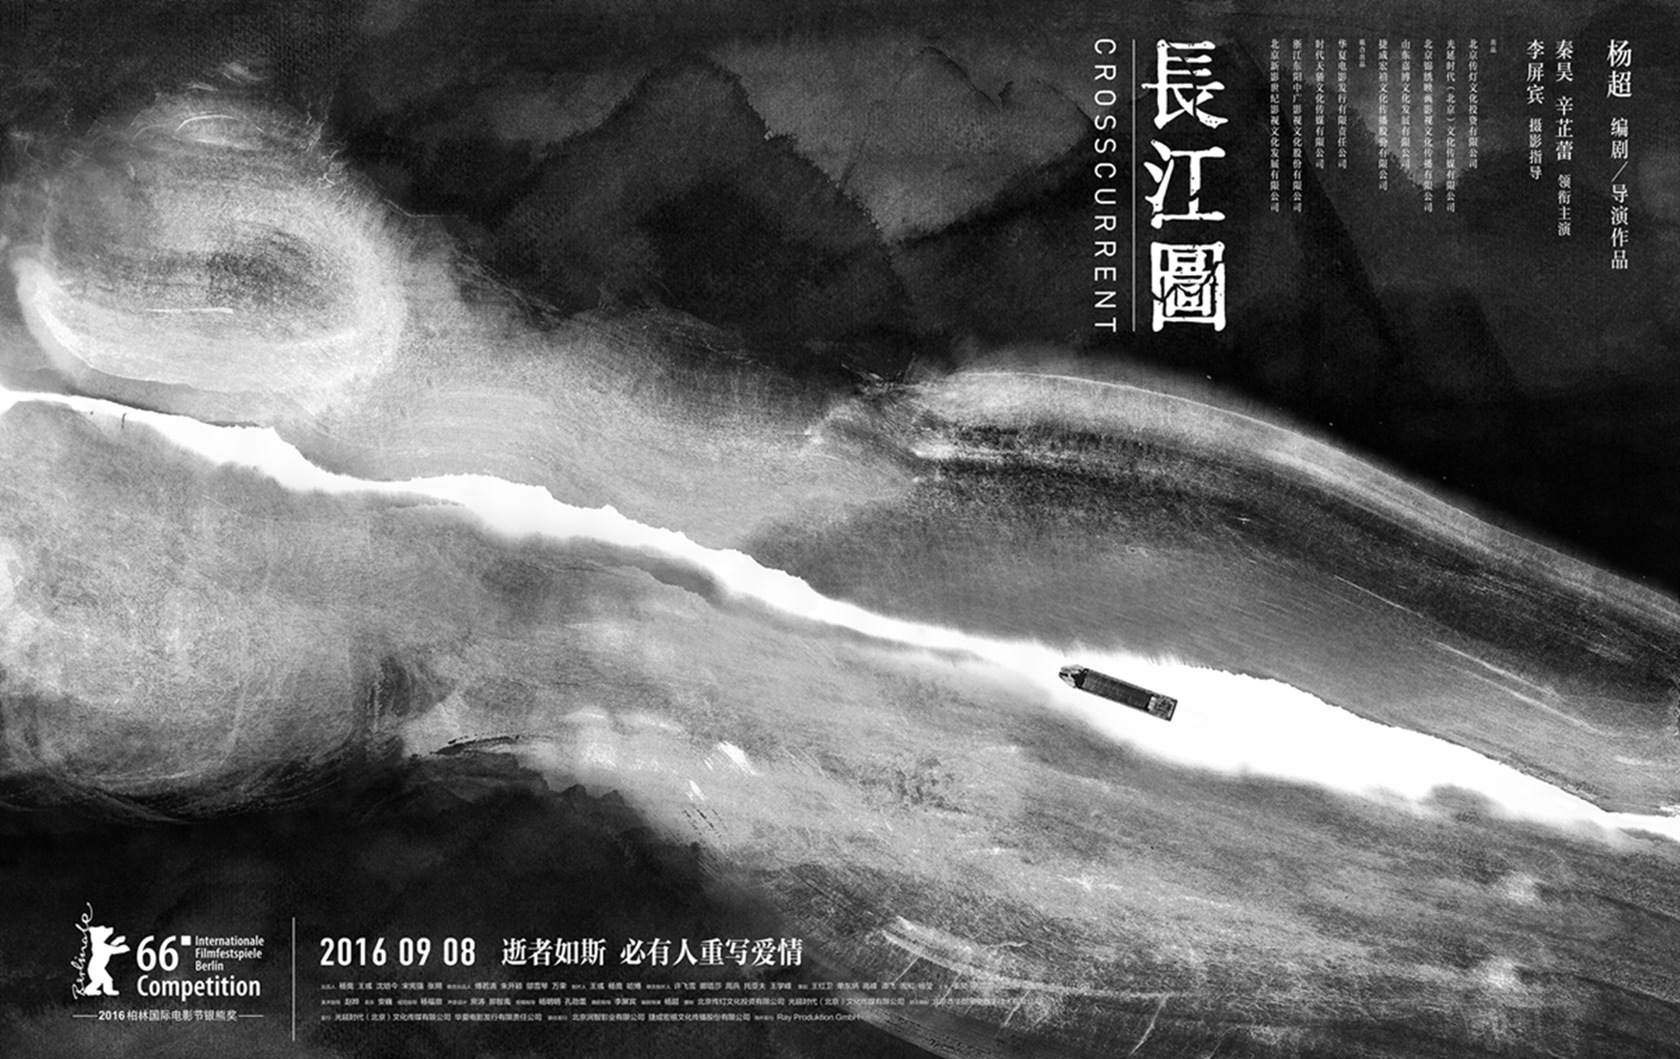 《长江图》发布重生版水墨海报再造魔幻爱情